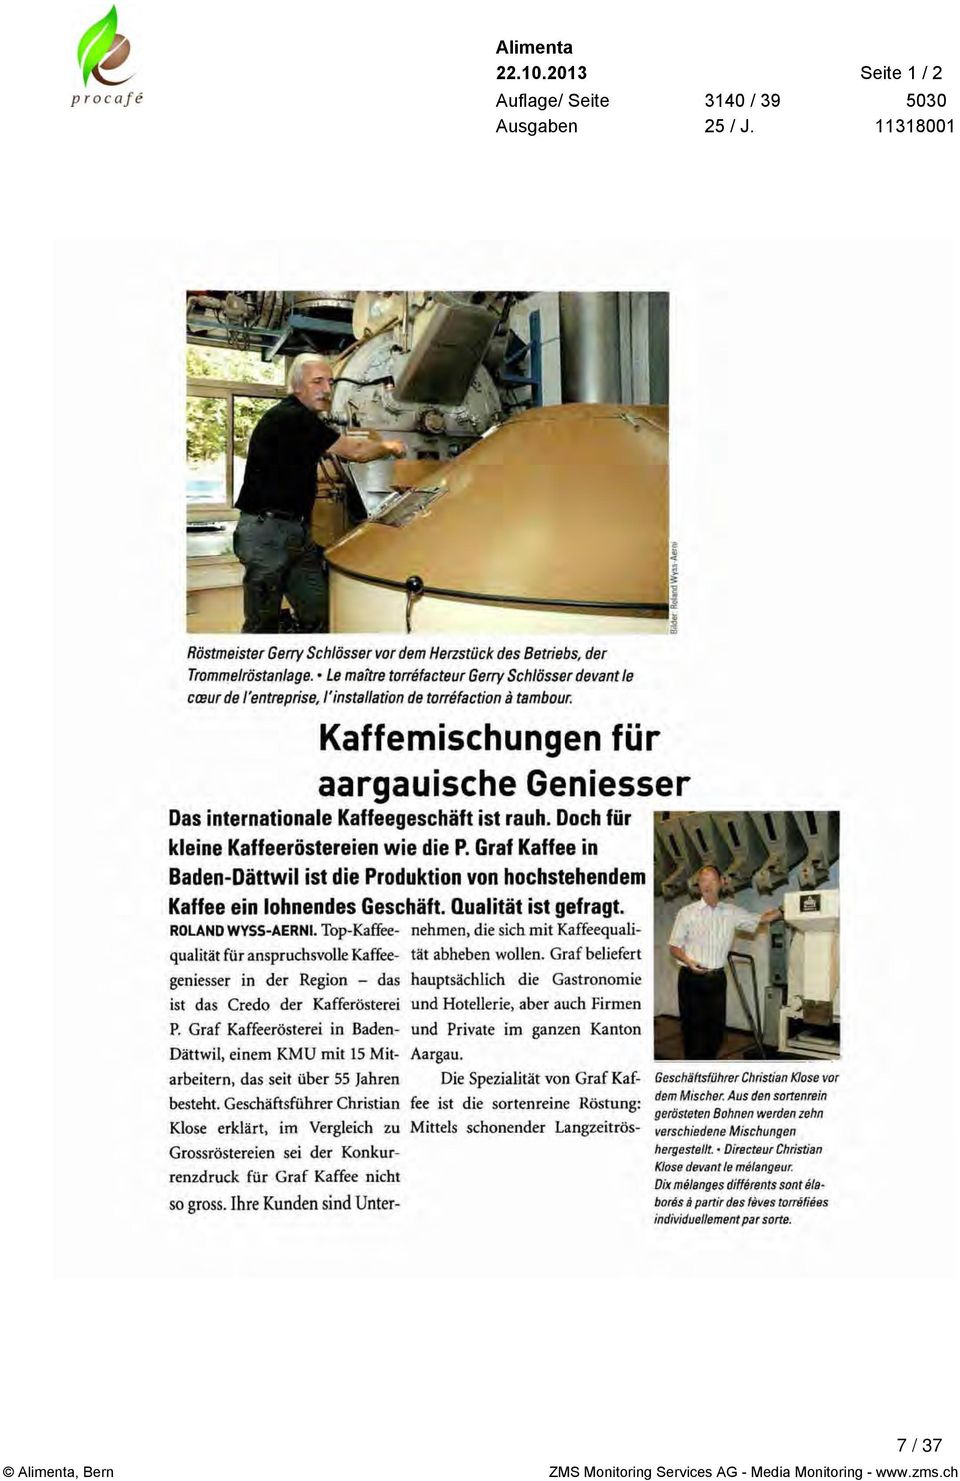 Top-Kaffee- Dättwil, einem KMU mit 15 Mitarbeitern, das seit über 55 Jahren besteht.